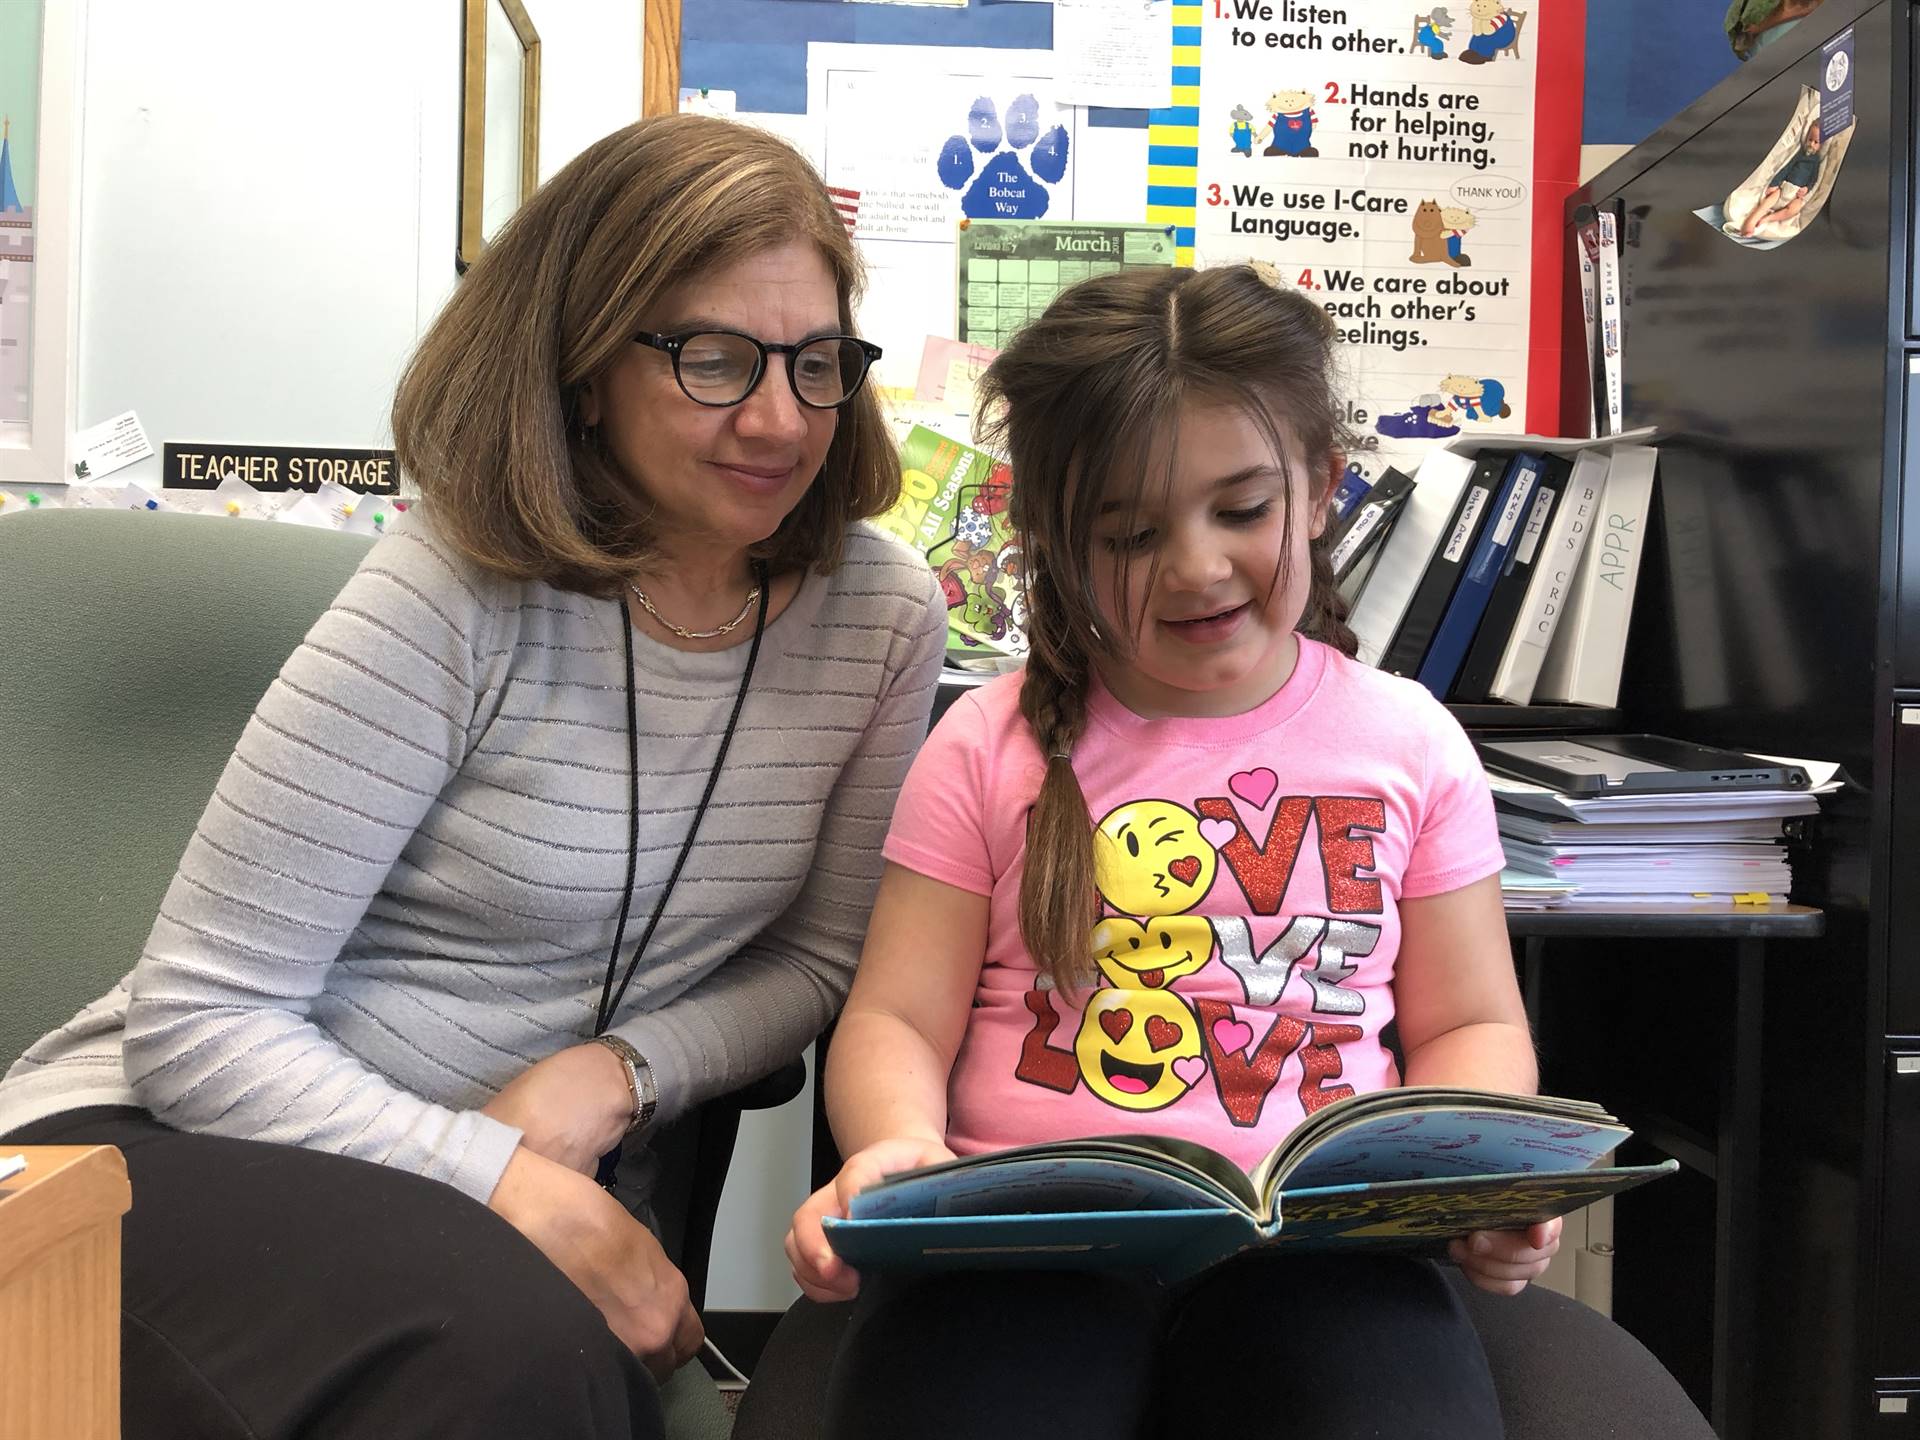 Principal Maynard and first grader read together